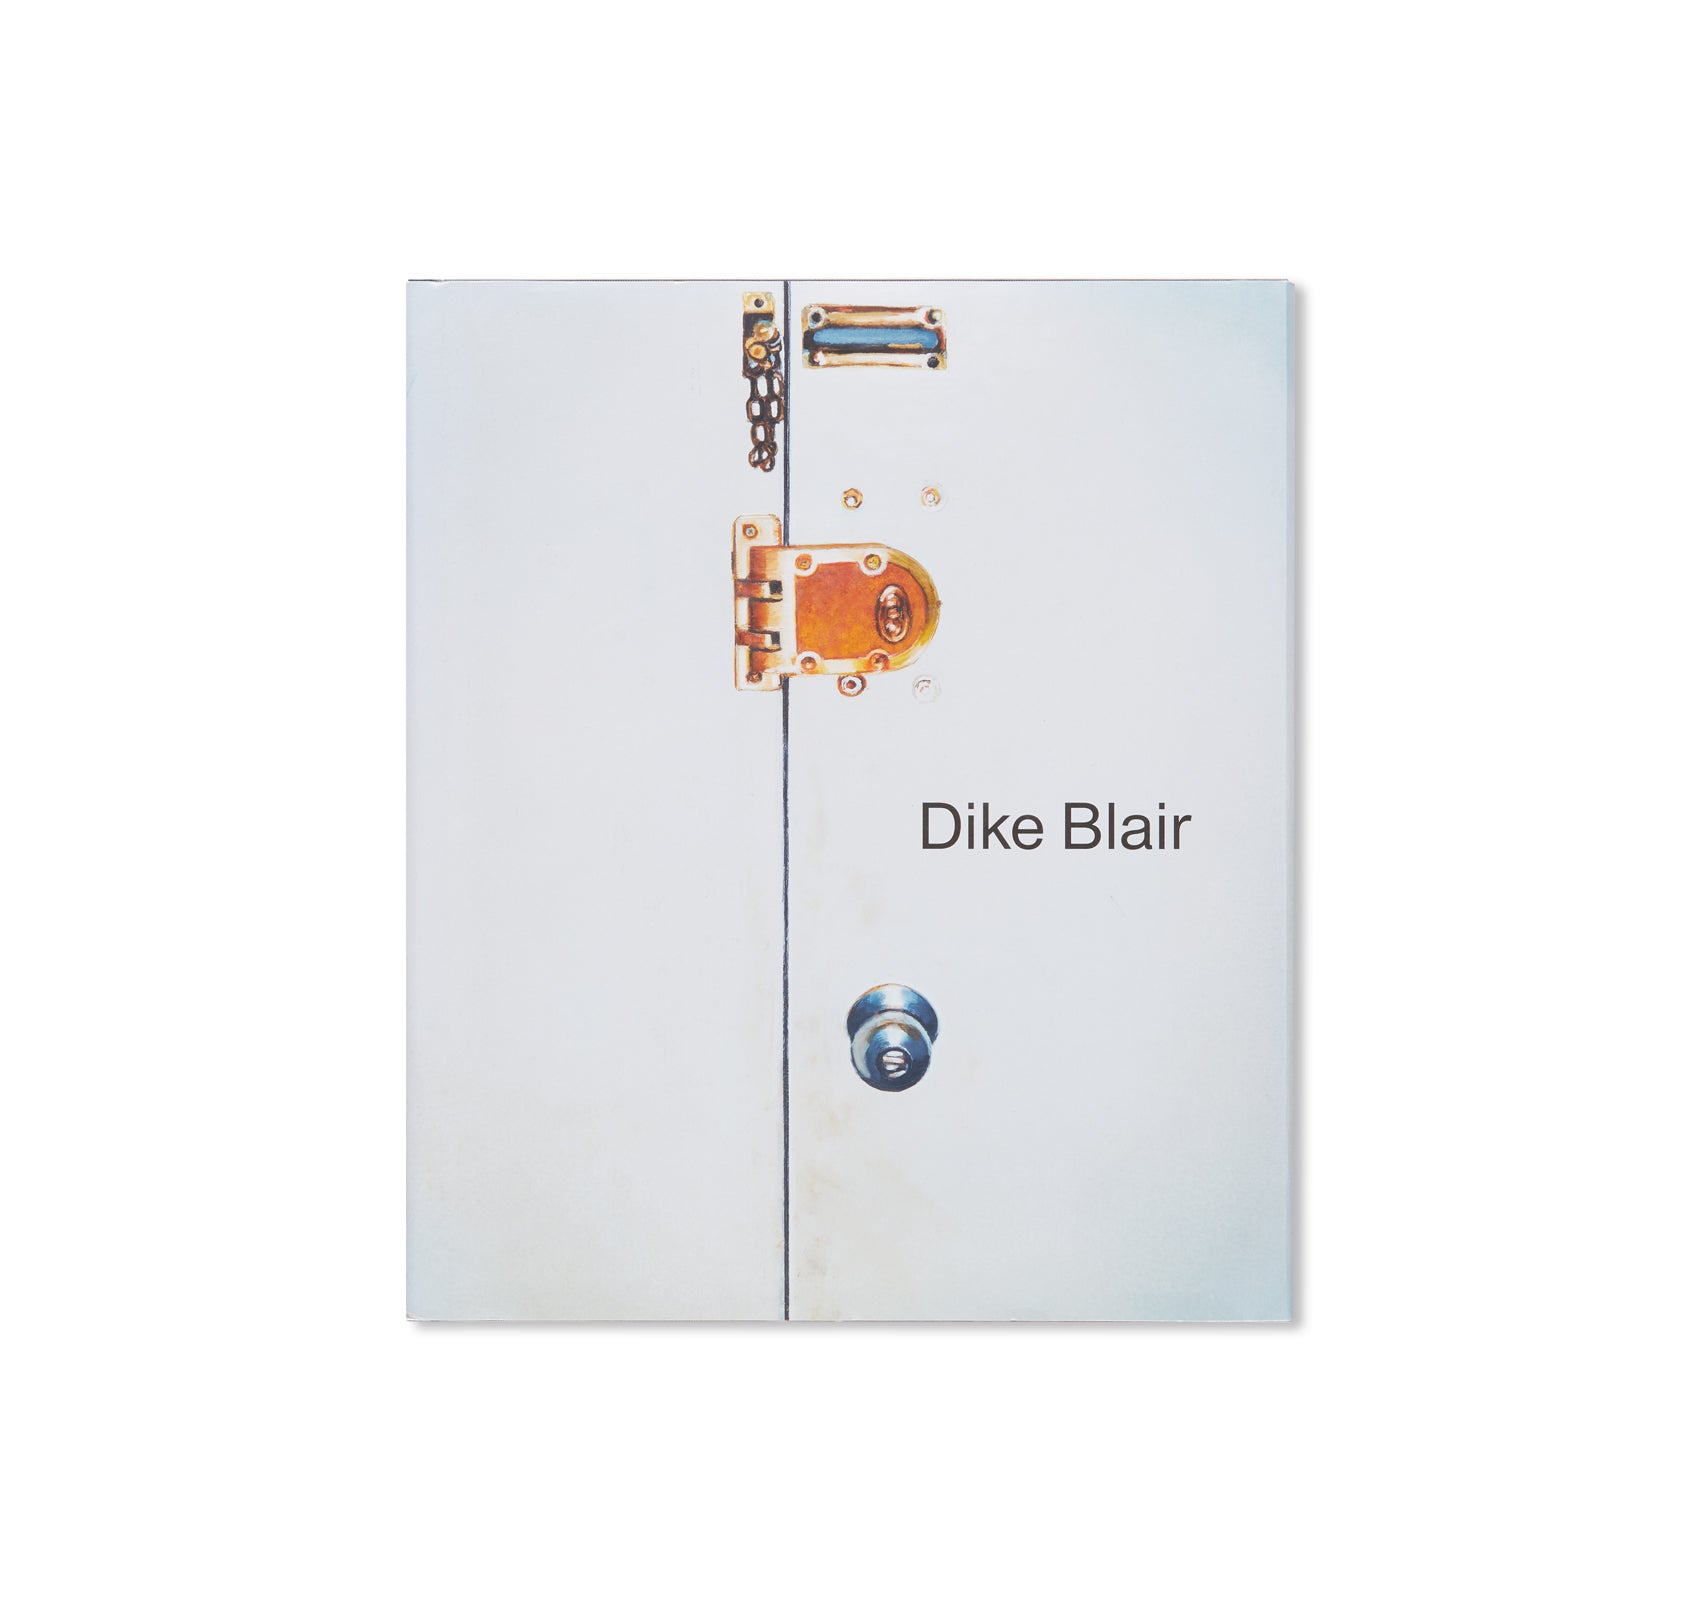 DIKE BLAIR by Dike Blair